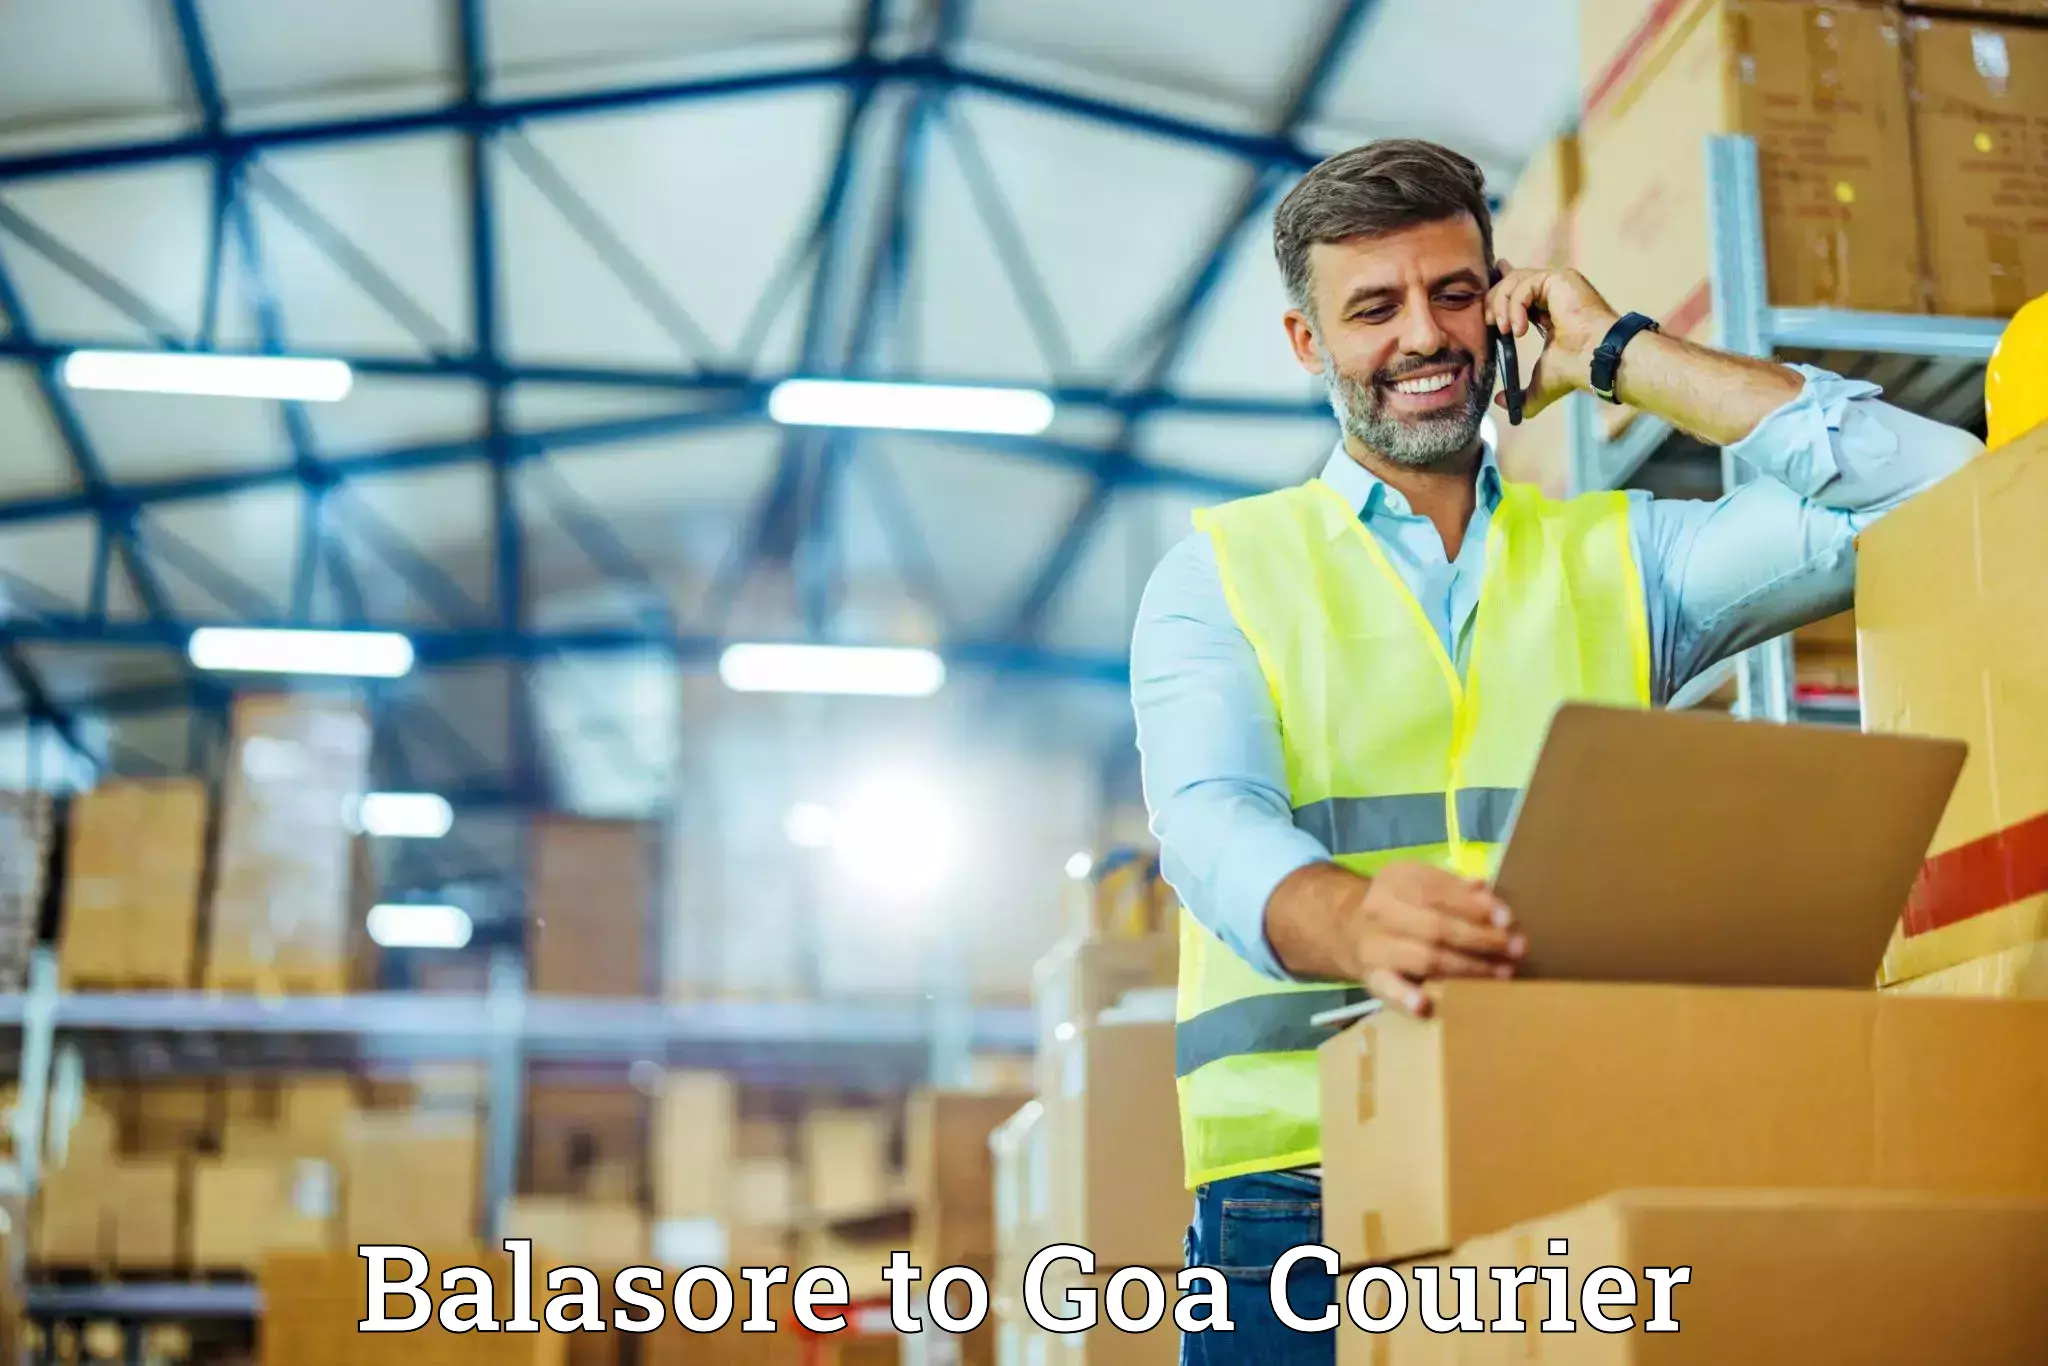 Quality moving company Balasore to Goa